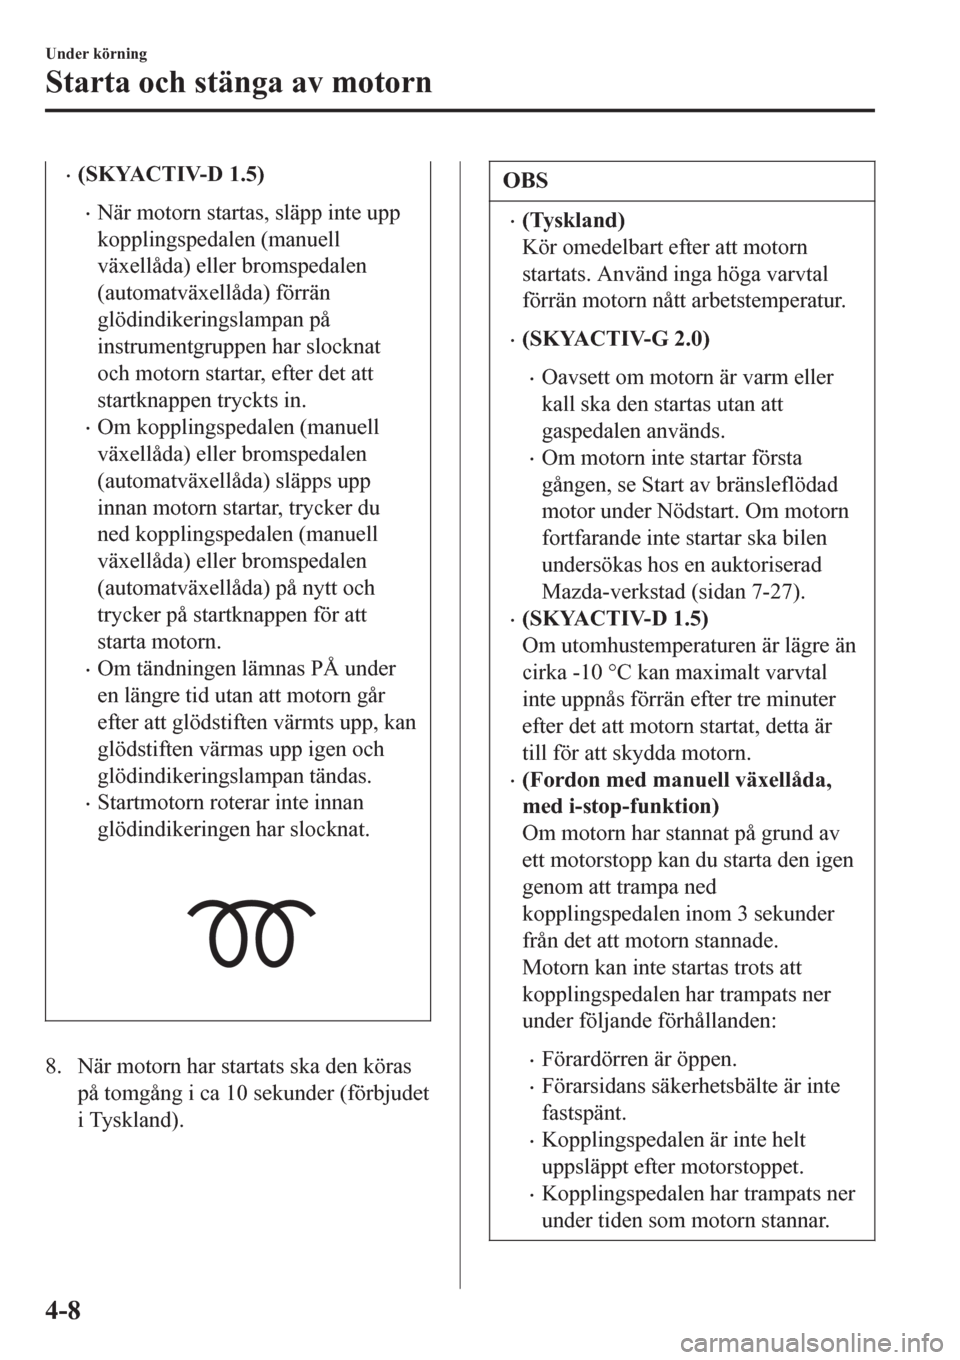 MAZDA MODEL CX-3 2016  Ägarmanual (in Swedish) •(SKYACTIV-D 1.5)
•När motorn startas, släpp inte upp
kopplingspedalen (manuell
växellåda) eller bromspedalen
(automatväxellåda) förrän
glödindikeringslampan på
instrumentgruppen har slo